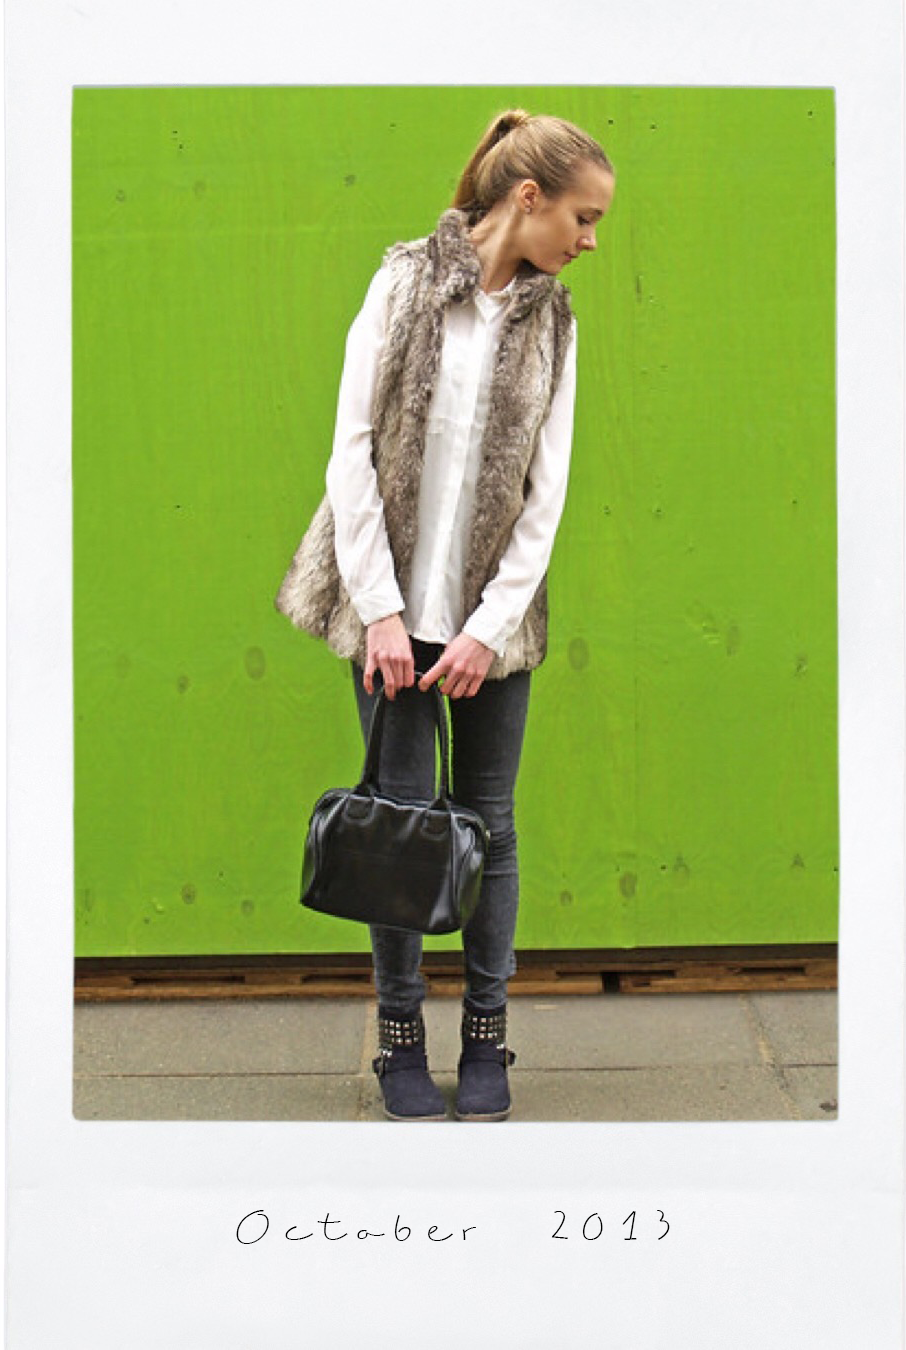 Fashion blogger autumn outfit inspiration - Syysmuoti asuinspiraatio muotiblogi